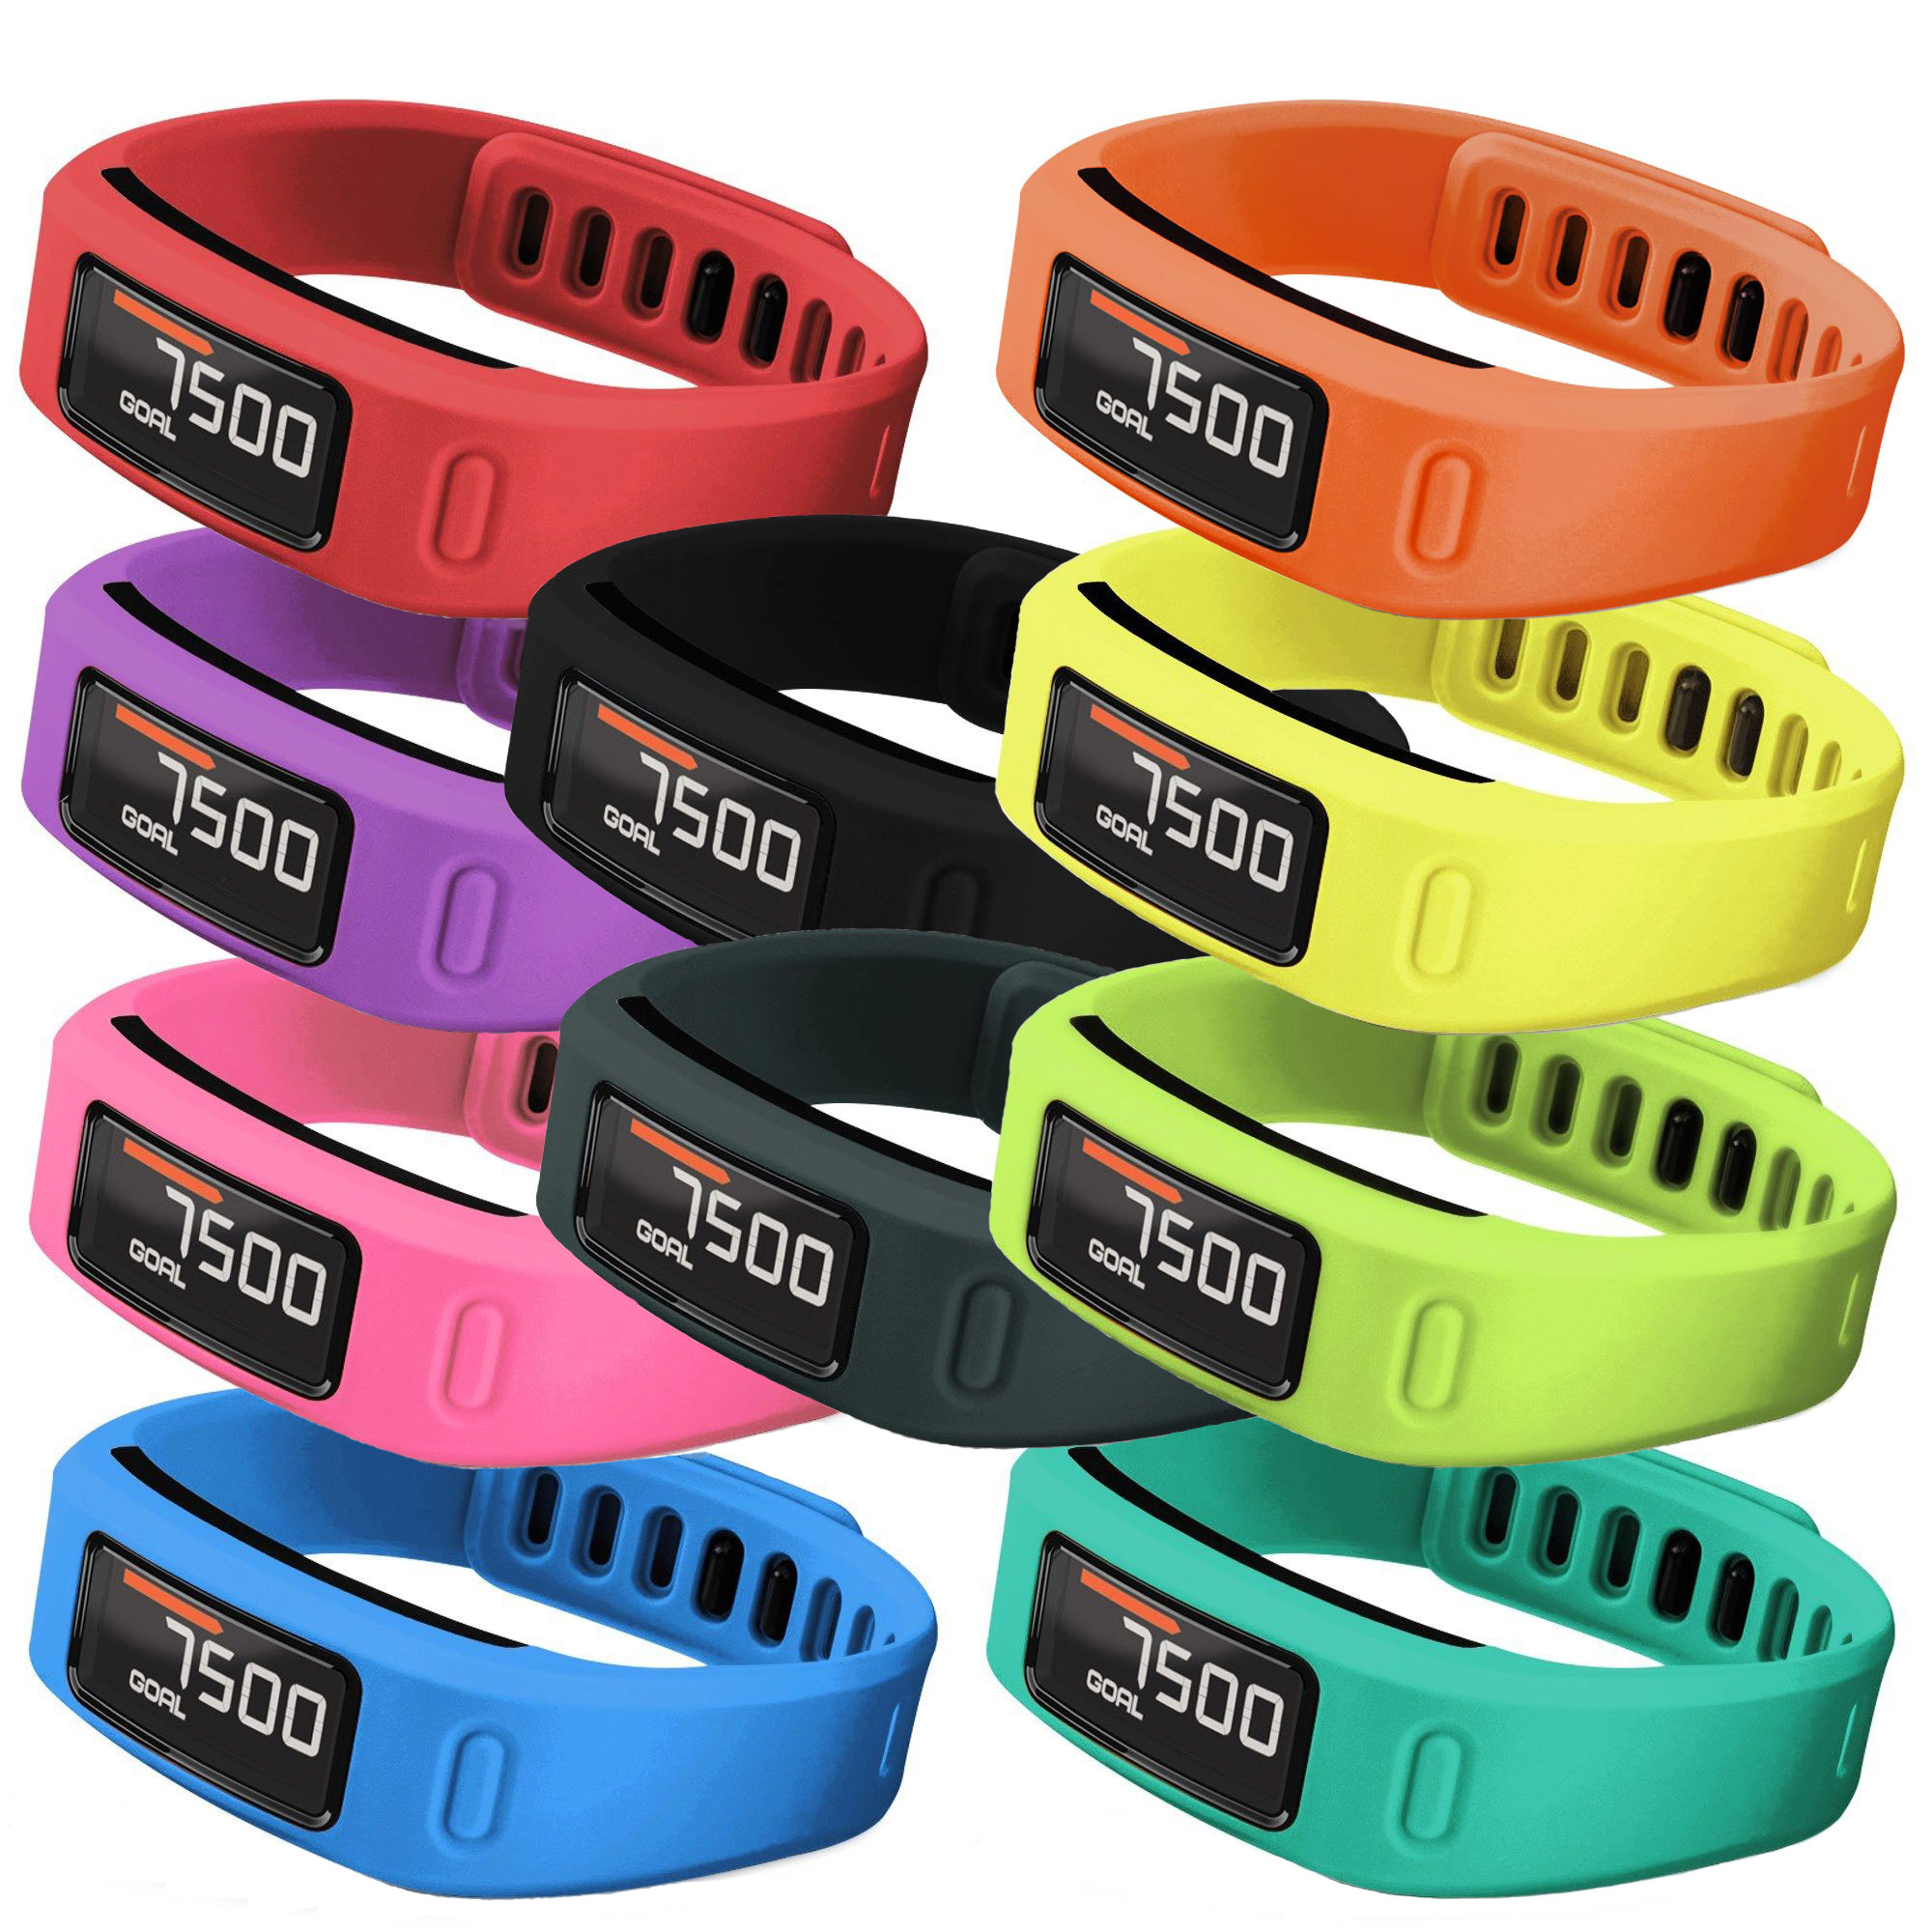 Garmin Vivofit Large Wristbands for sale online 